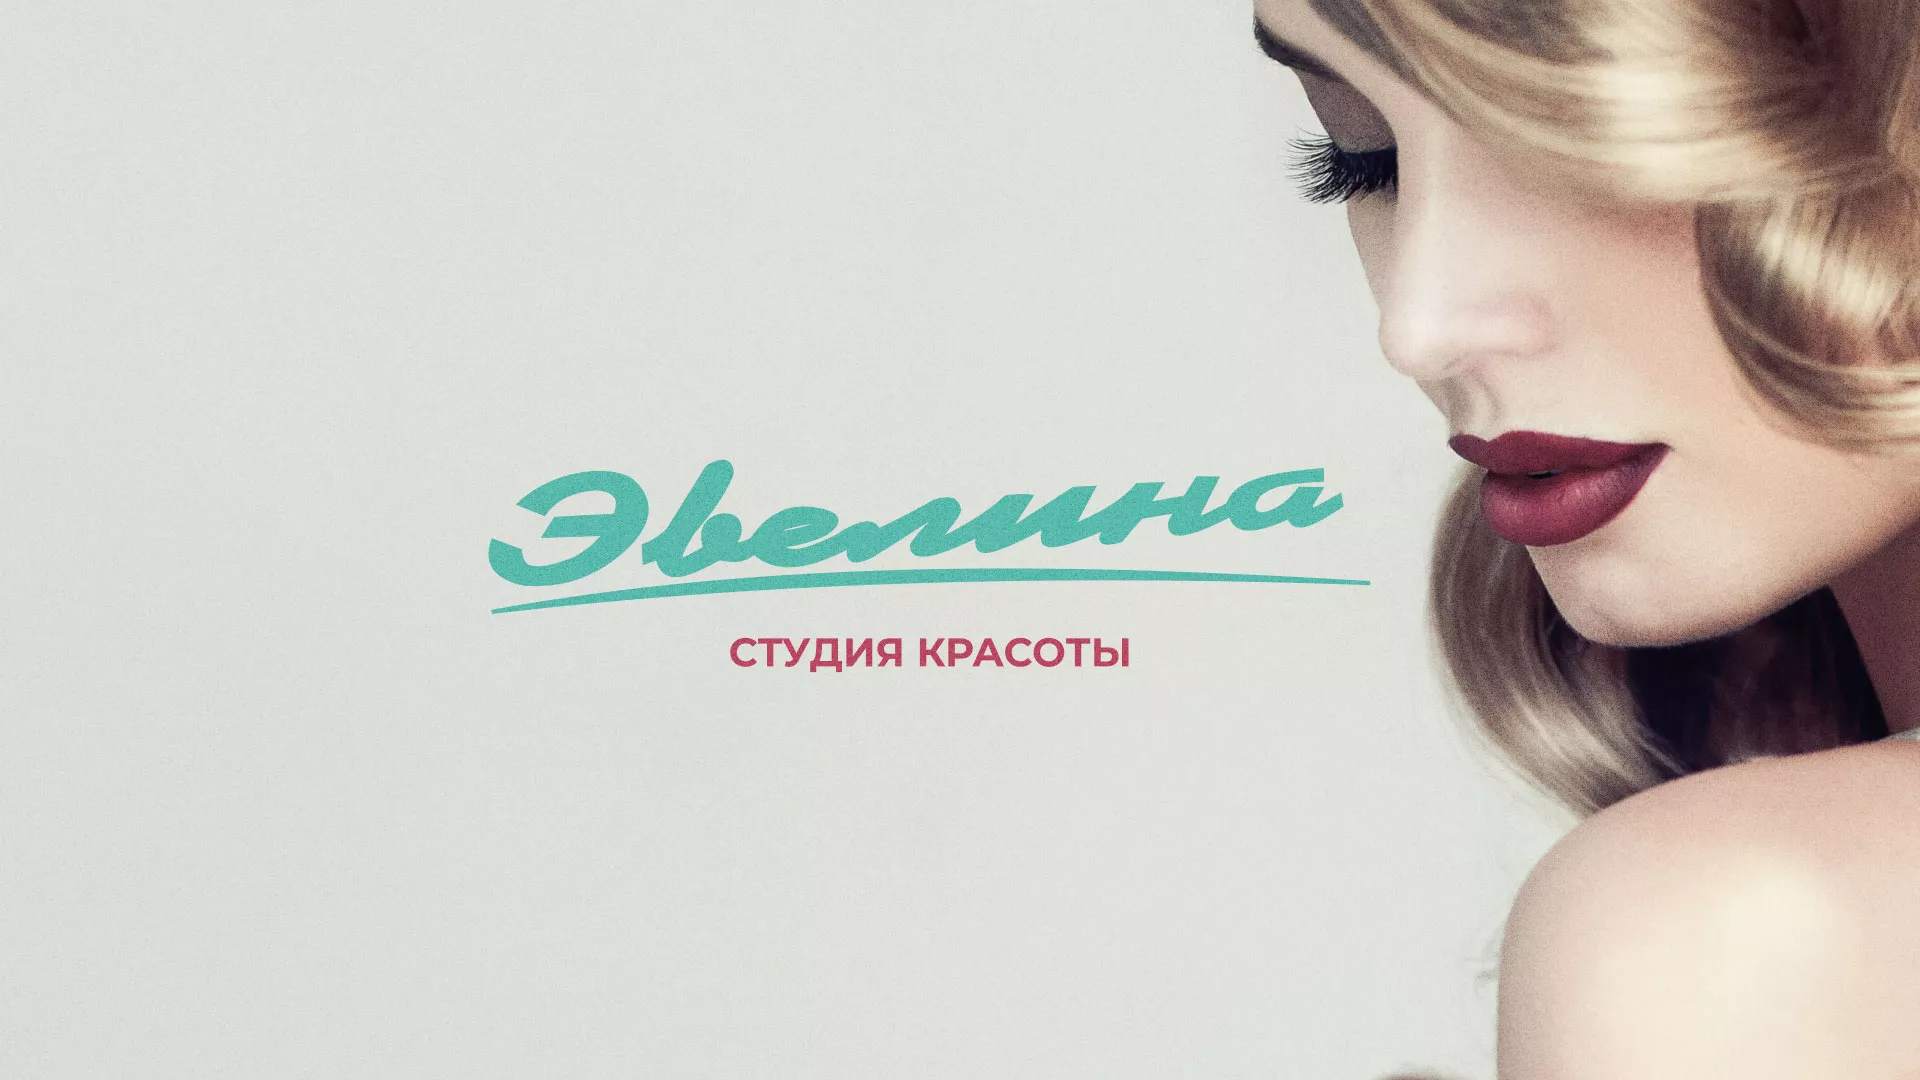 Разработка сайта для салона красоты «Эвелина» в Санкт-Петербурге